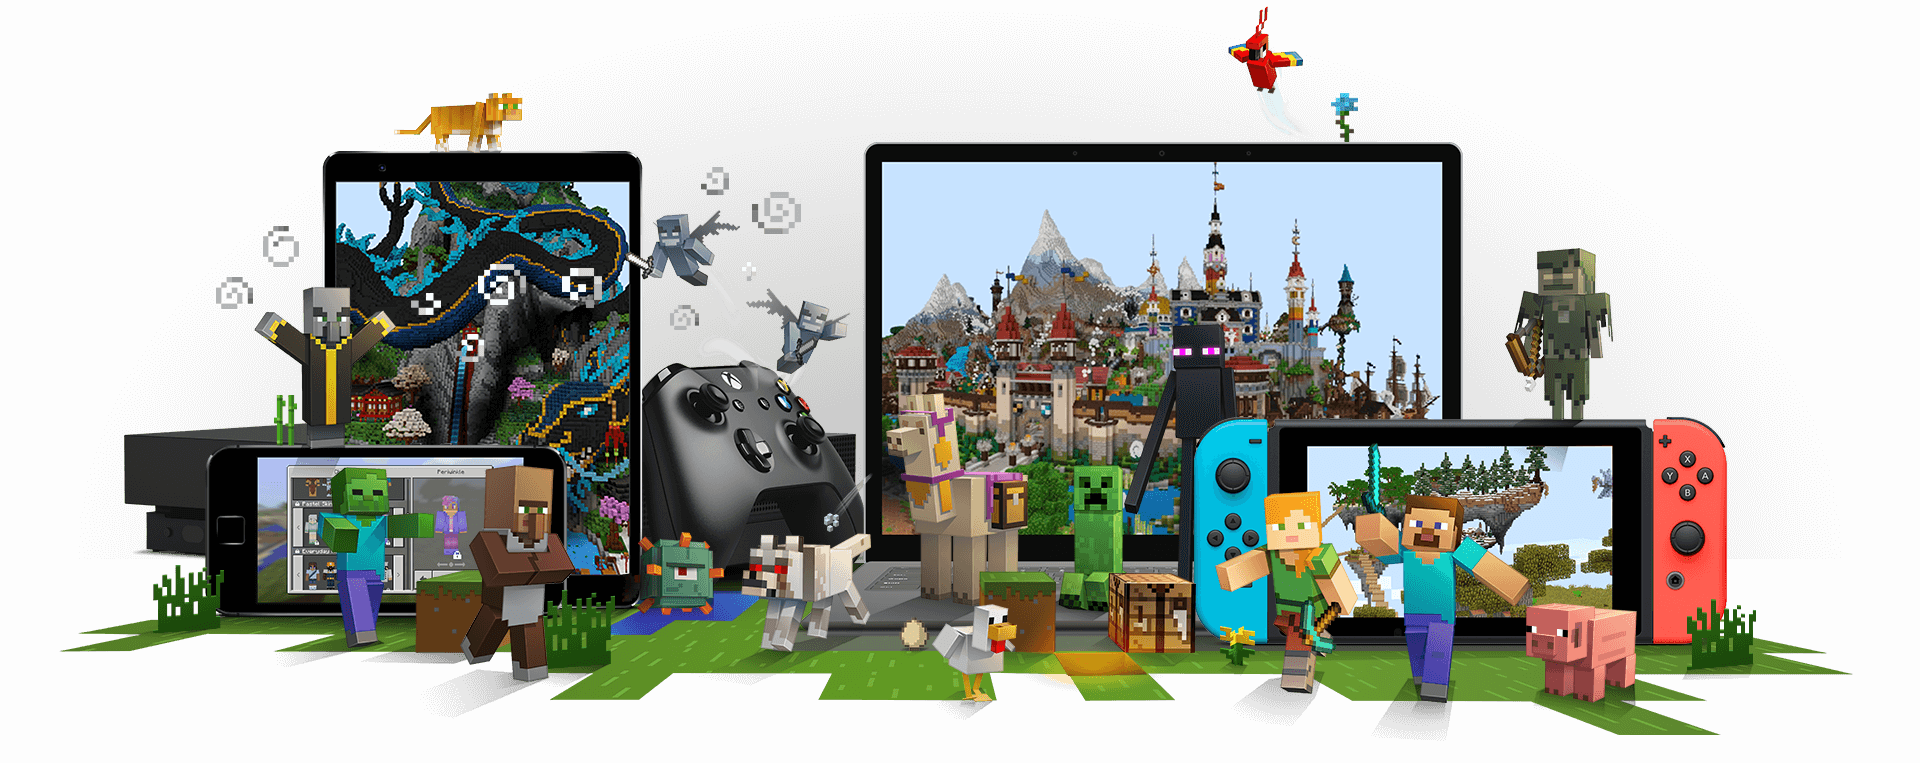 Alcuni personaggi di Minecraft intorno ai dispositivi su cui è possibile giocare a Minecraft, tra cui una console Xbox, un telefono cellulare, un PC potatile e Nintendo Switch.